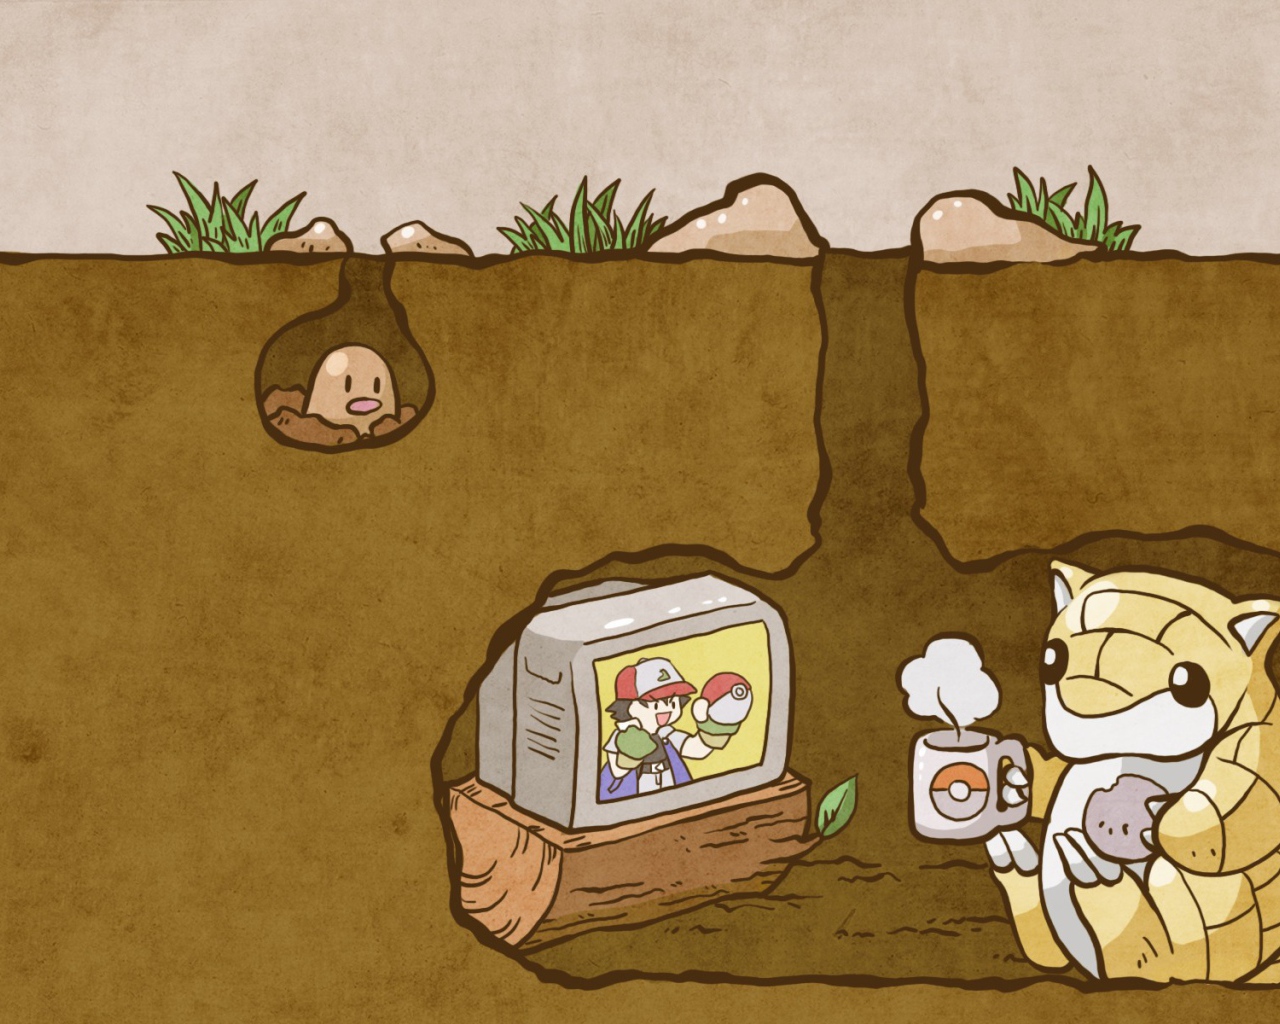 Покемон смотрит телевизор под землей